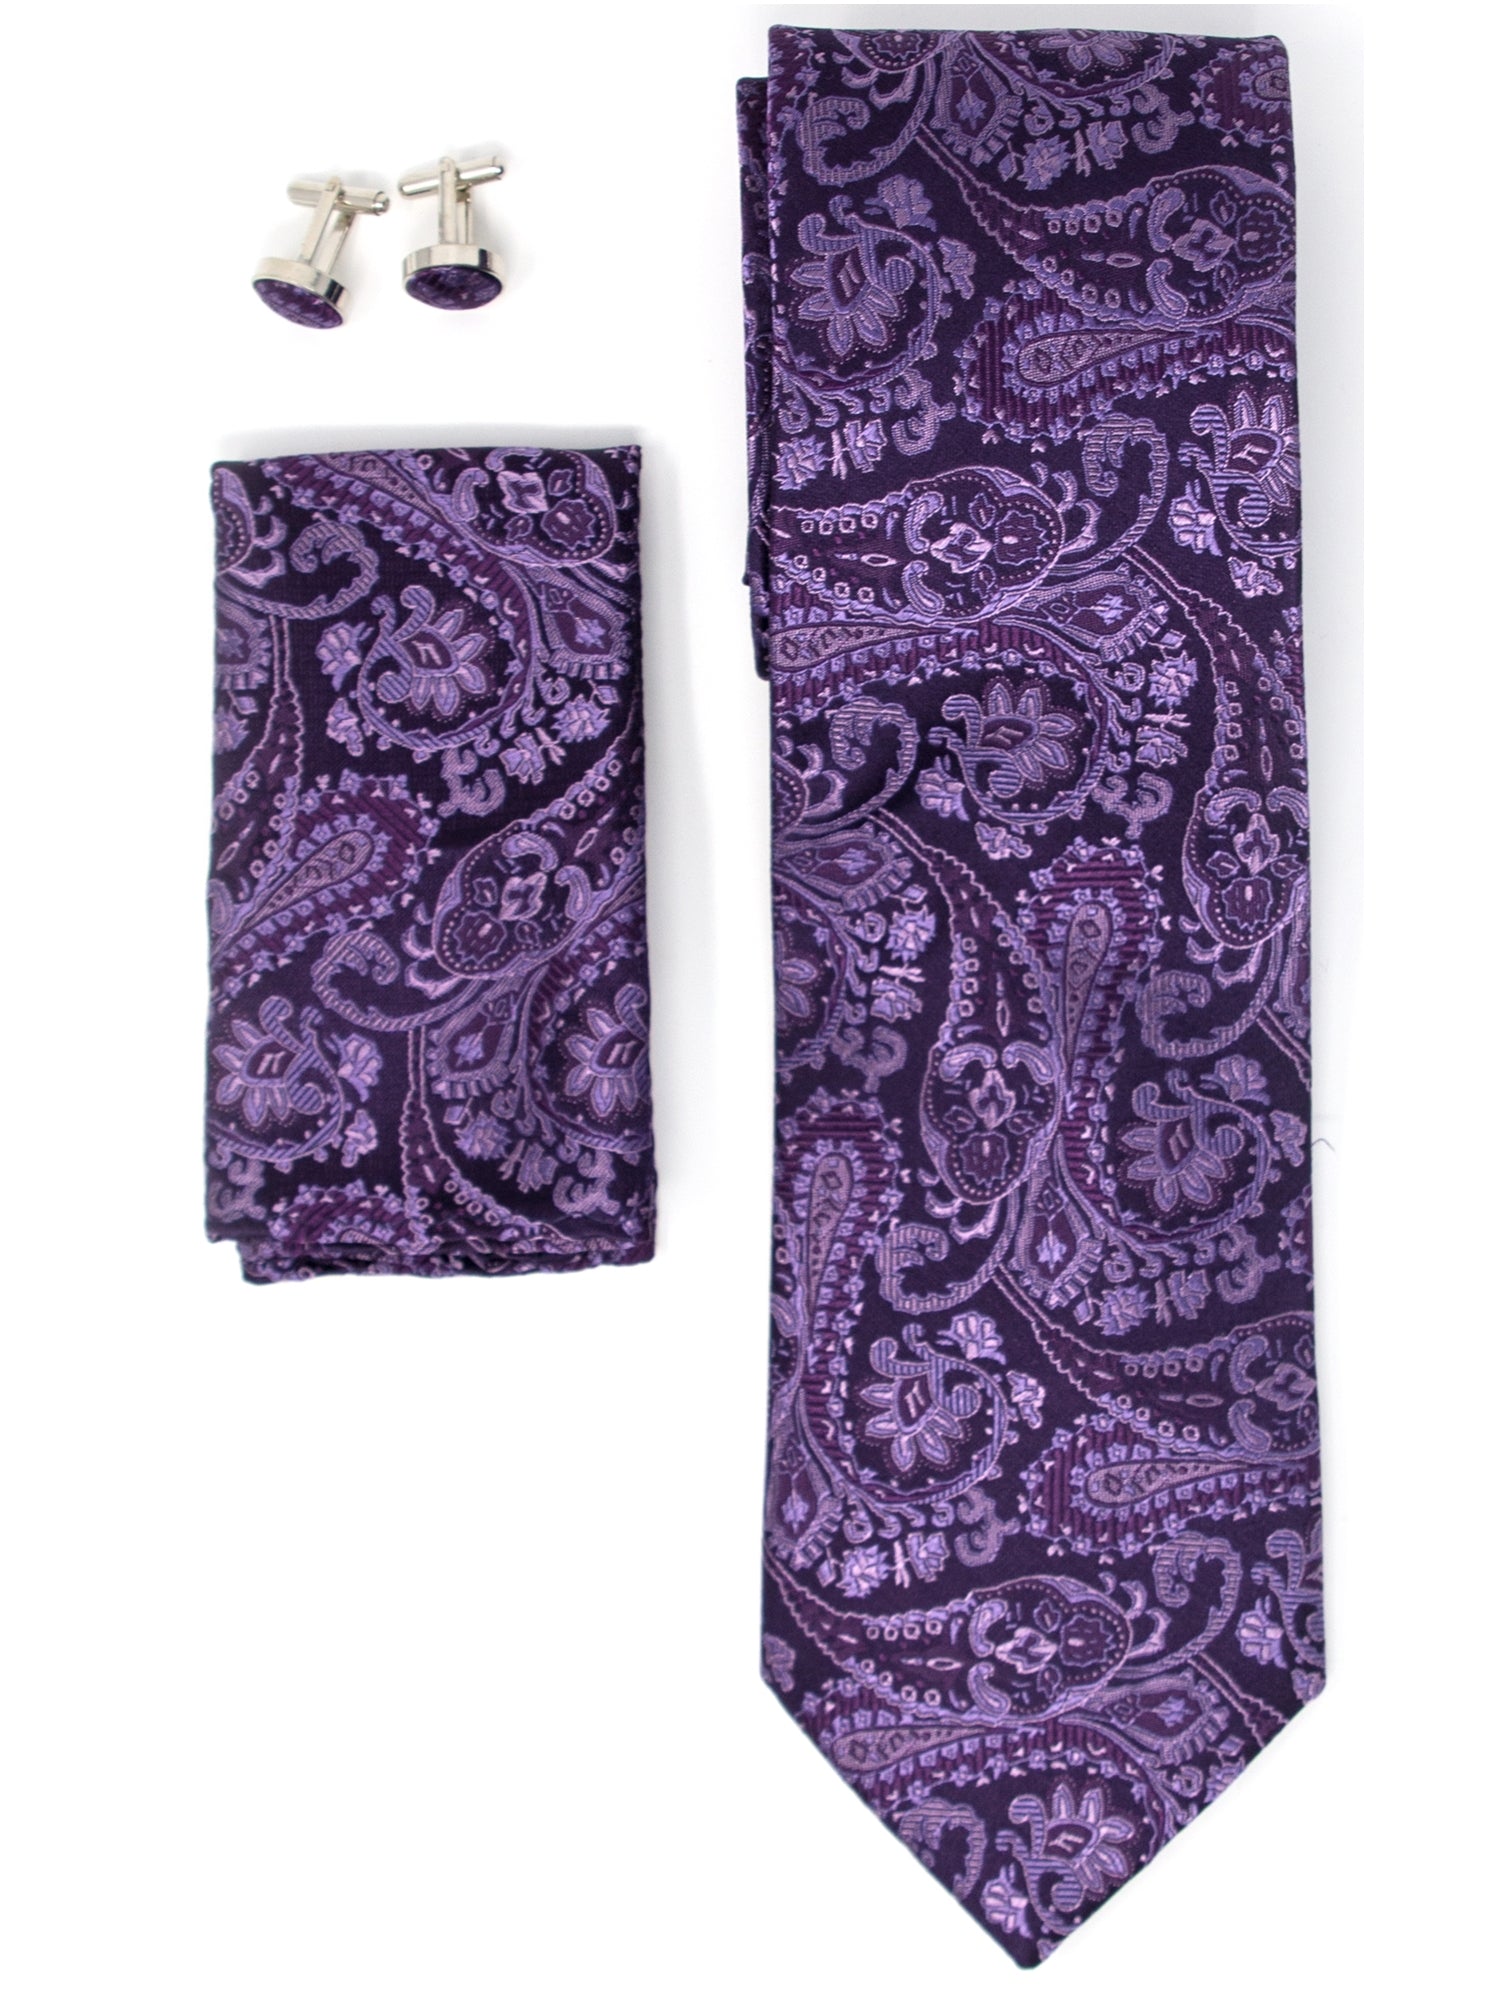 Men's Silk Neck Tie Set Cufflinks & Hanky Collection Neck Tie TheDapperTie Purple Paisley Regular 